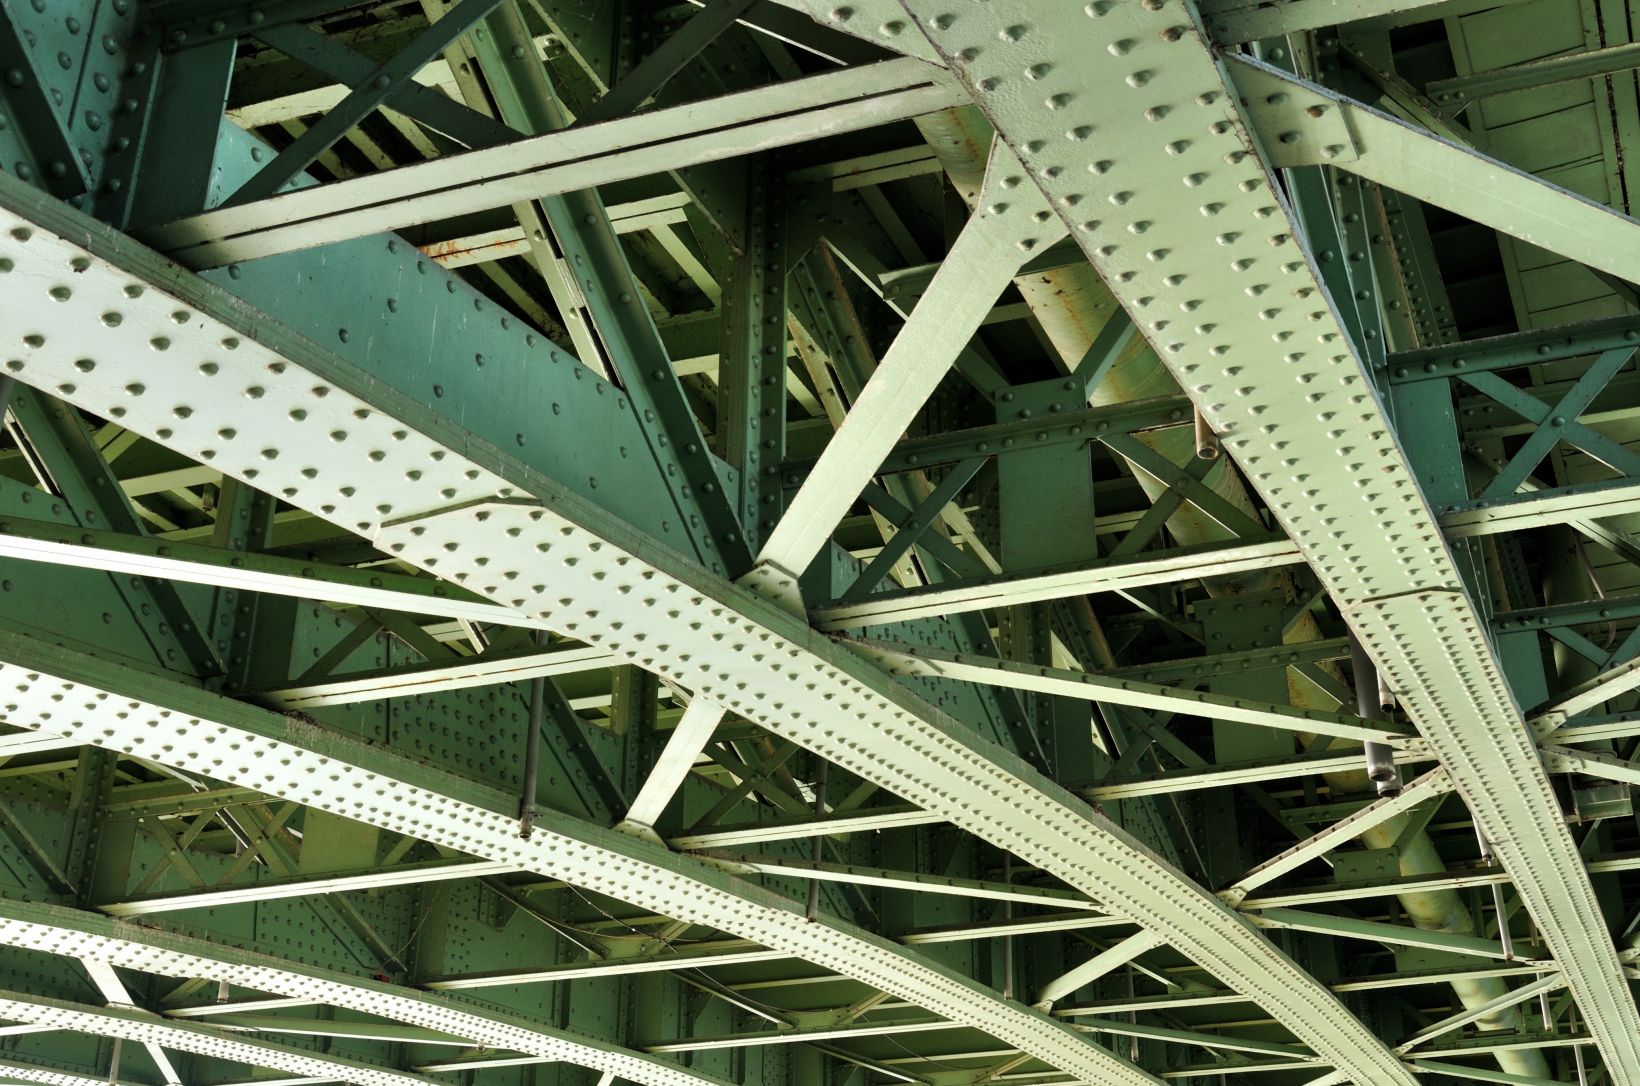 Zbliżenie na dźwigary stalowej konstrukcji mostu, na którym widoczne są części poddawane obciążeniom cyklicznym